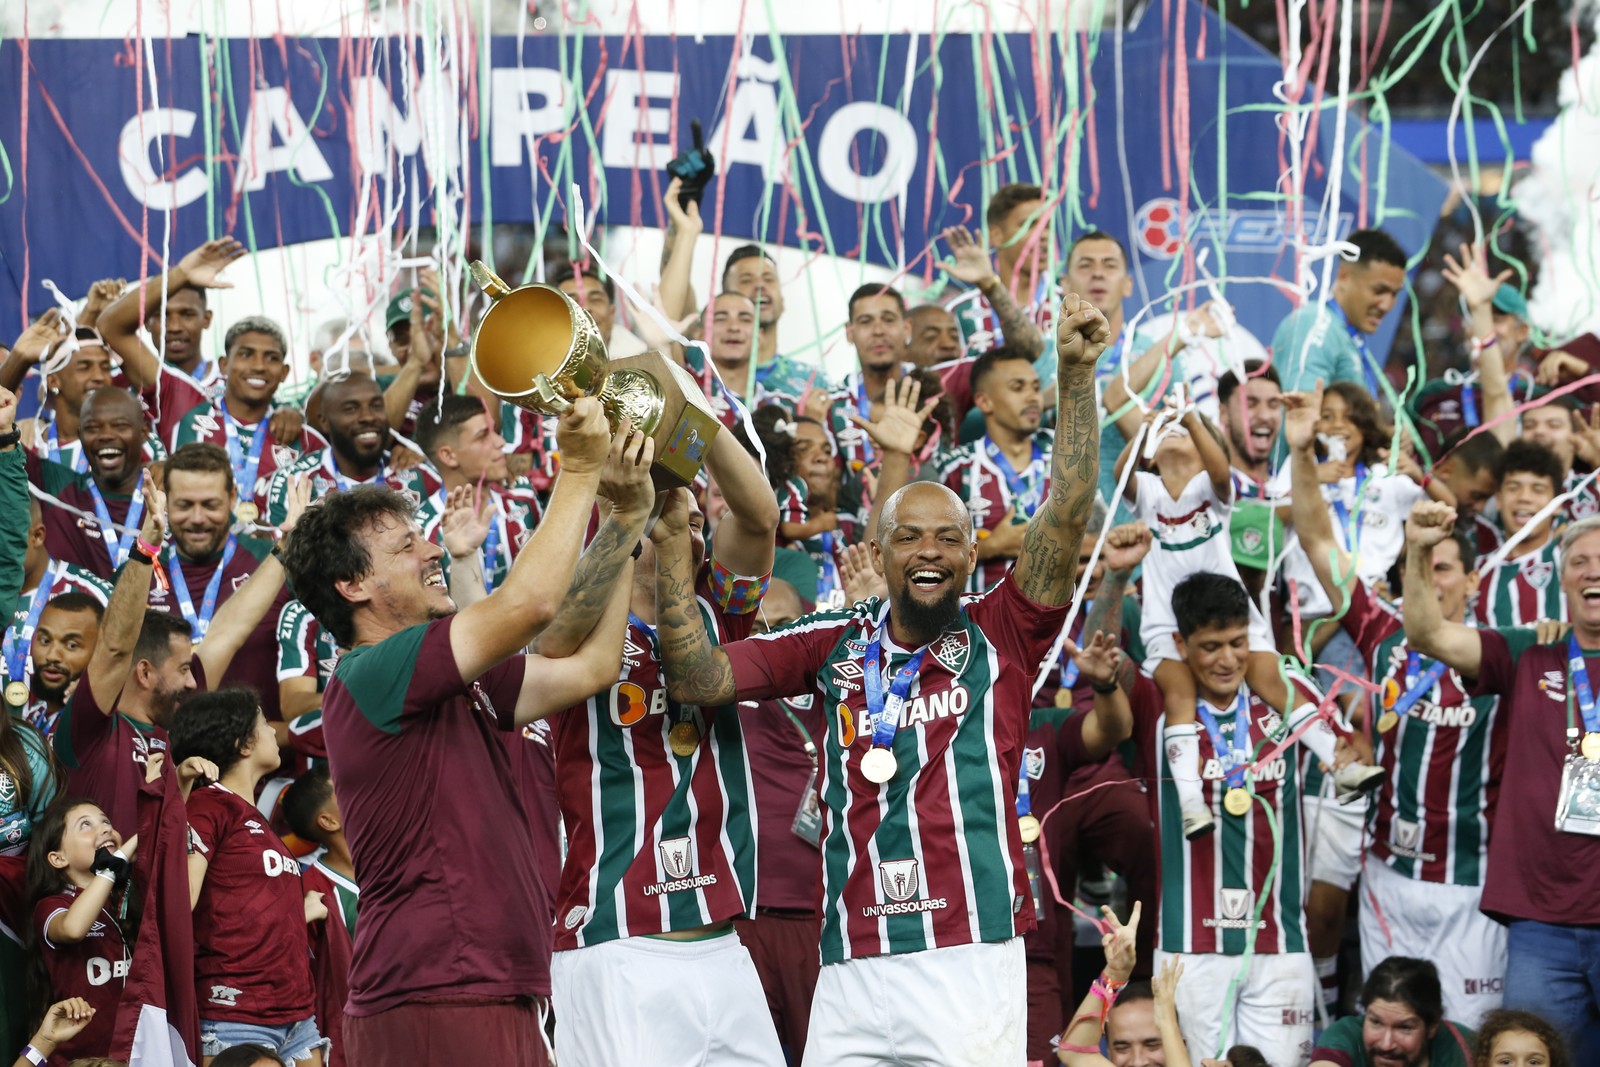 Fluminense ganhou o Campeonato Carioca — Foto: Guito Moreto / Agência O Globo